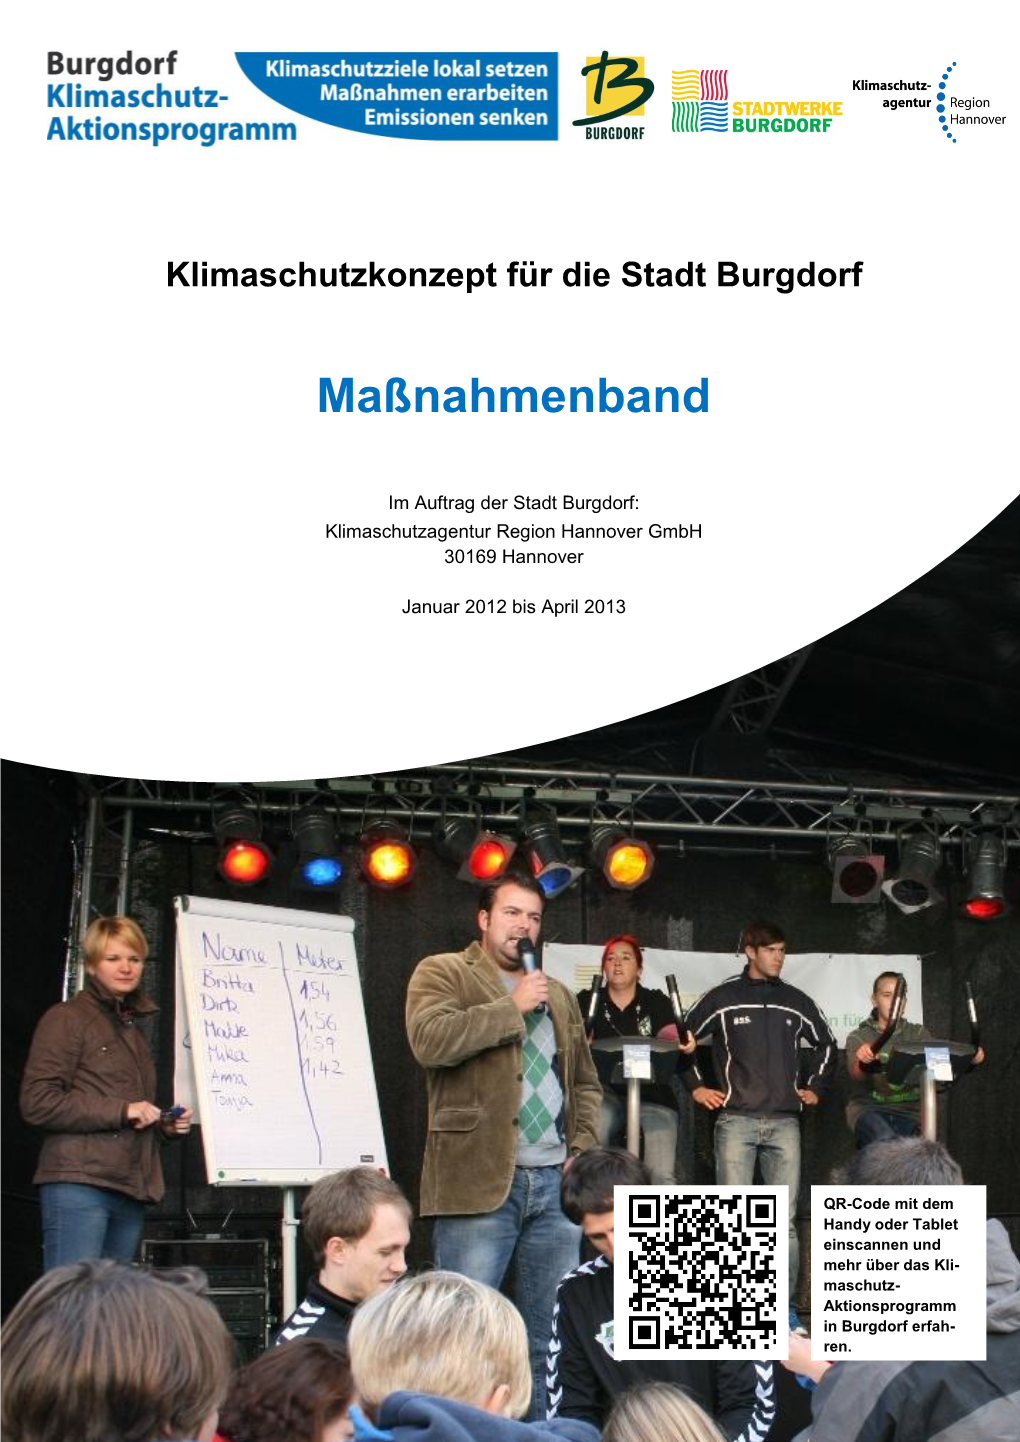 Klimaschutz-Aktionsprogram Burgdorf